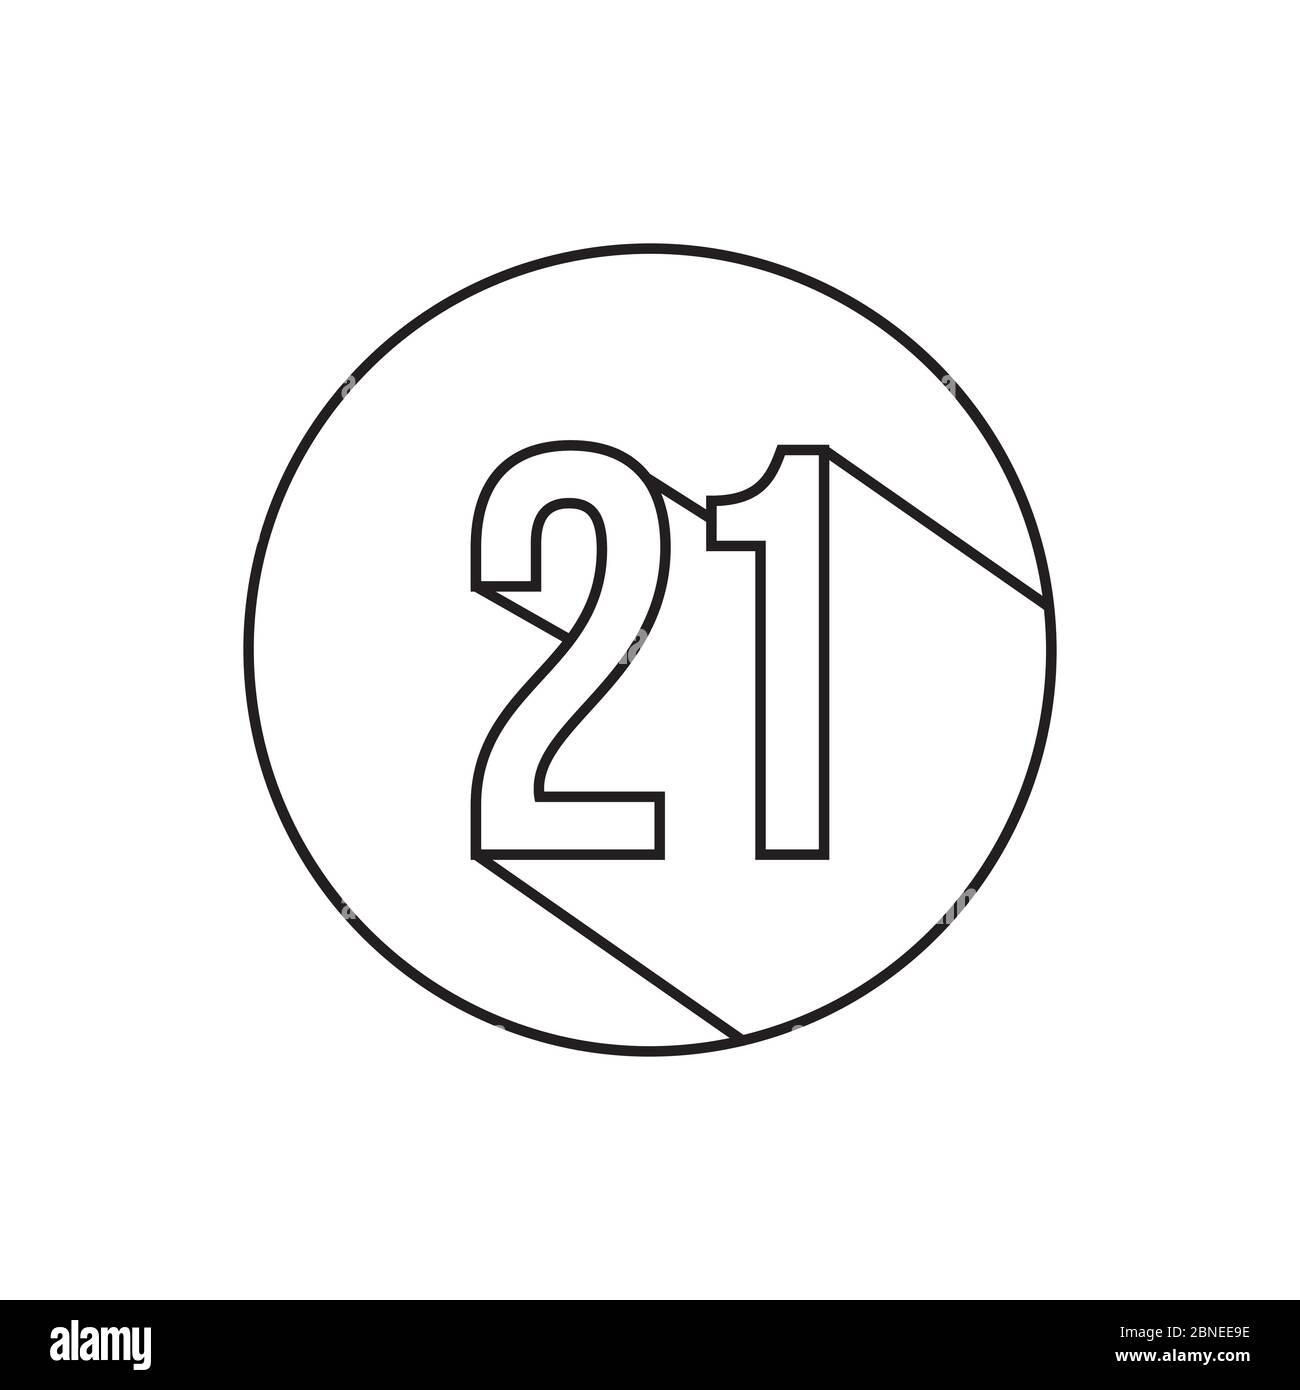 21 linee numeriche simbolo vettore isolato su sfondo bianco Illustrazione Vettoriale